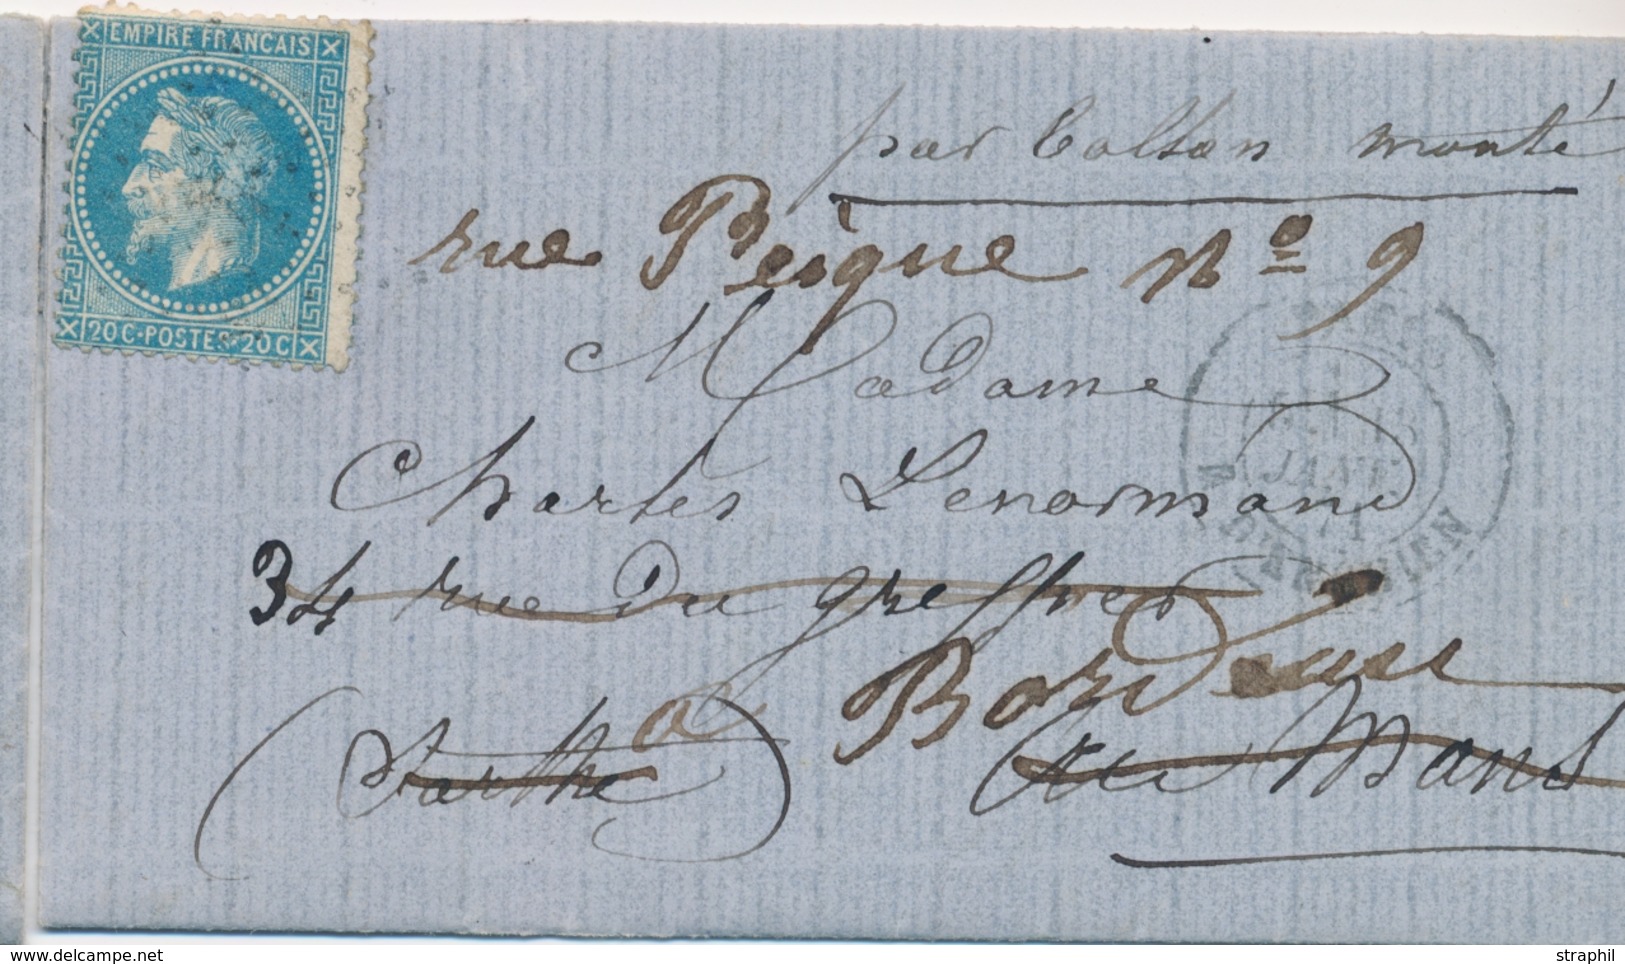 LAC BALLONS MONTES - LAC - La POSTE DE PARIS - LMM Du 15.1.71 - Etoile 4 Sur N°29 - CaD Rare D'ENGHIEN - Arrivée BORDEAU - War 1870